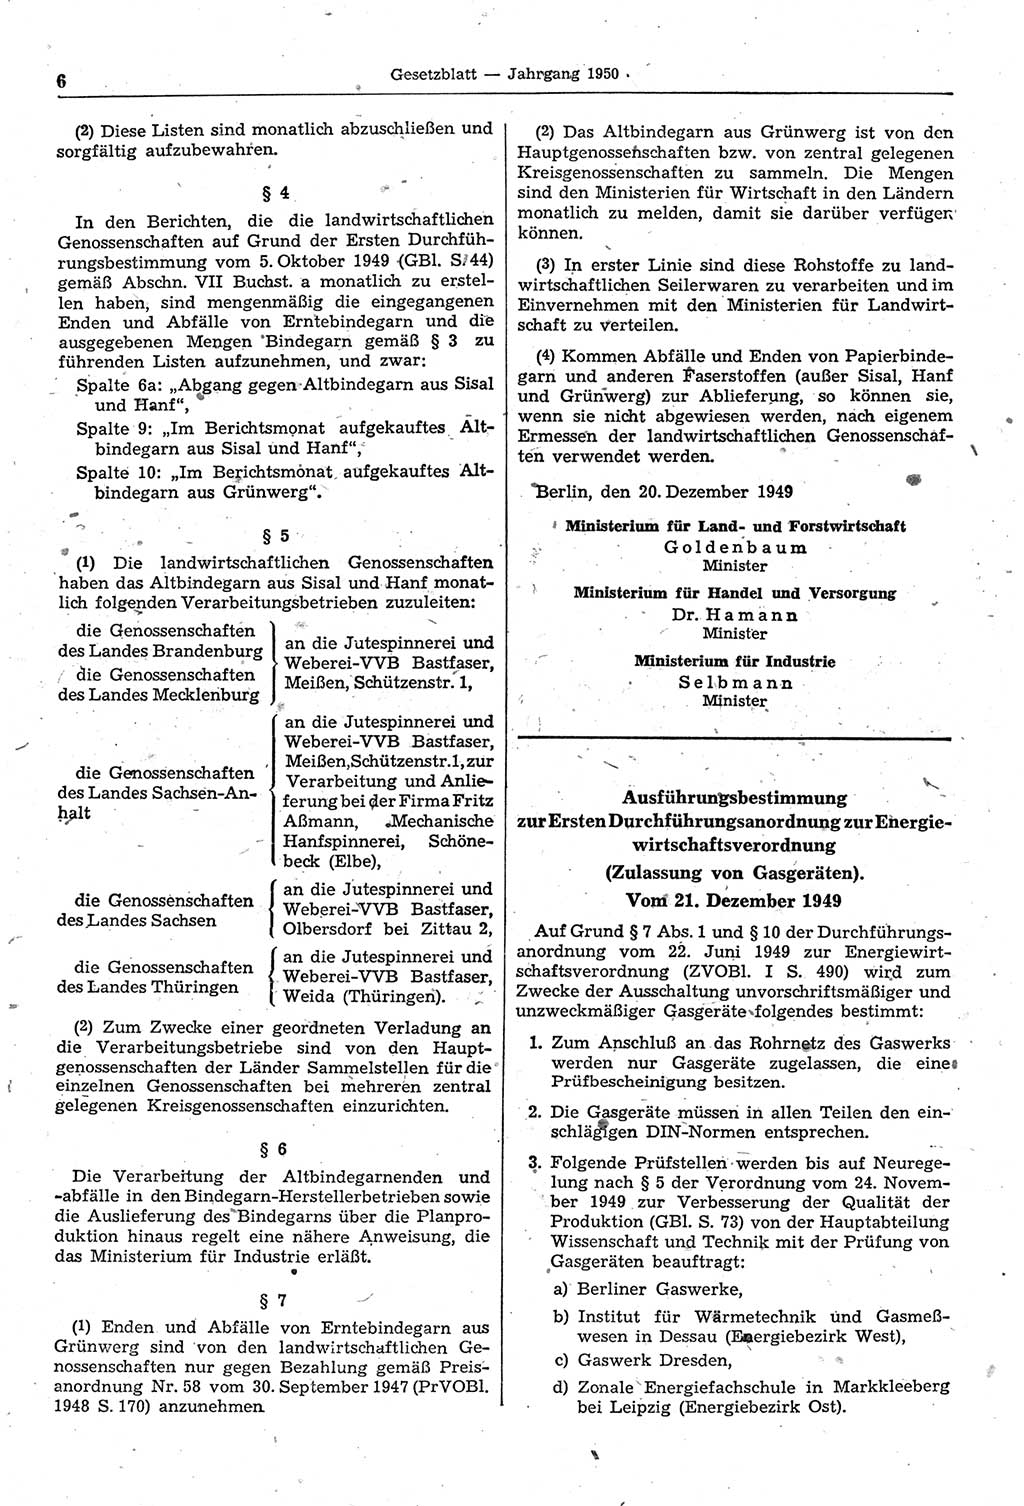 Gesetzblatt (GBl.) der Deutschen Demokratischen Republik (DDR) 1950, Seite 6 (GBl. DDR 1950, S. 6)